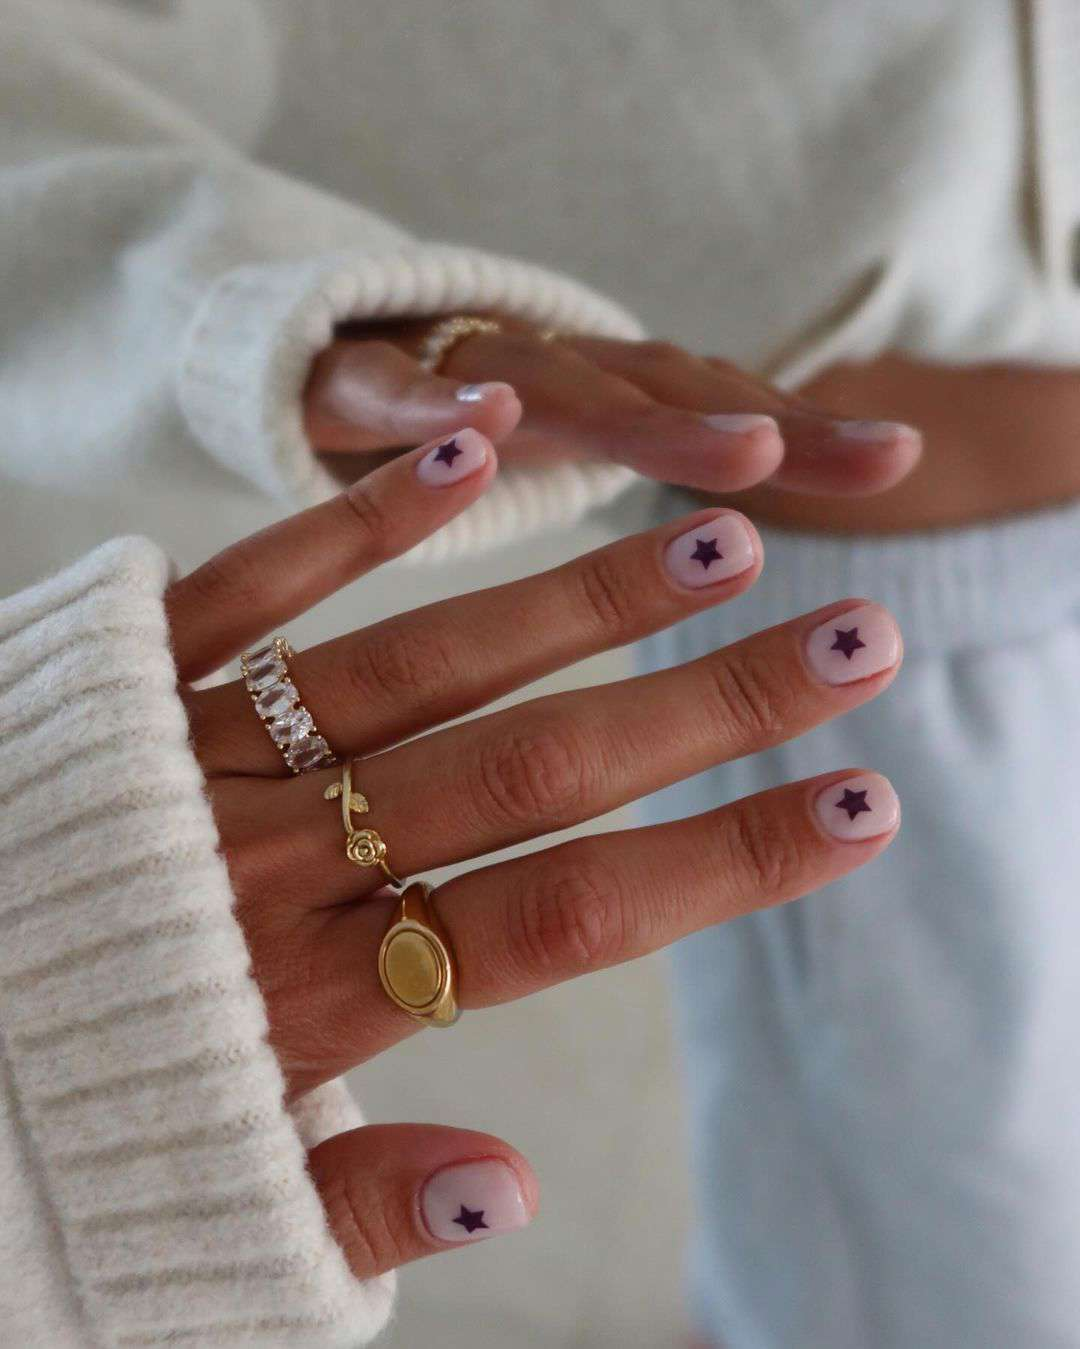 15 uñas permanentes bonitas para inspirarte: decoradas